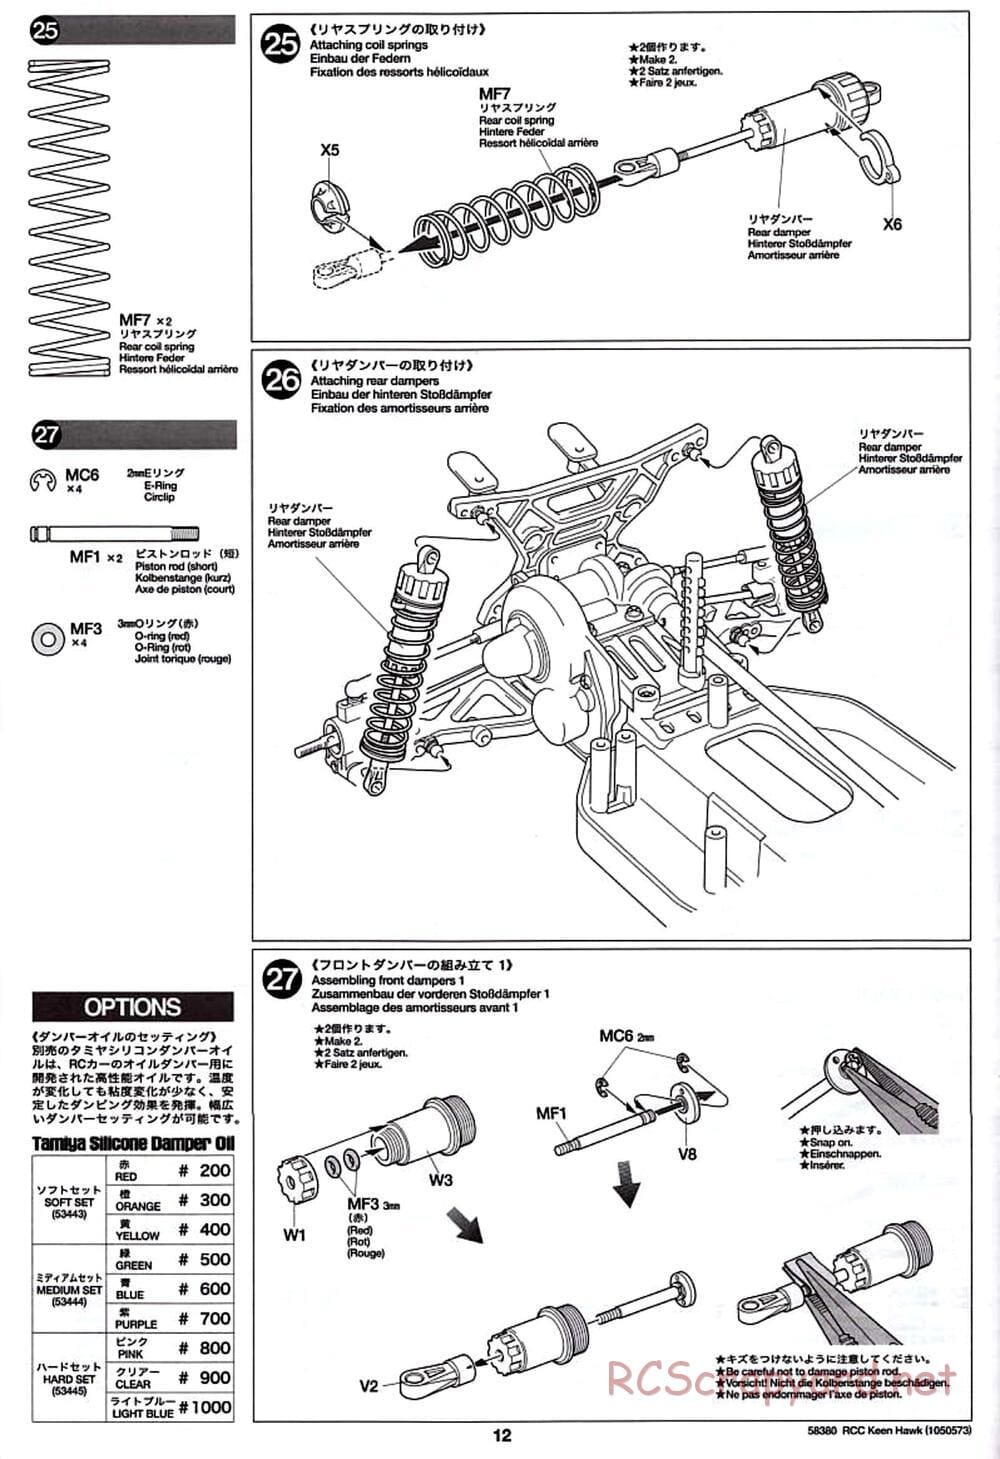 Tamiya - Keen Hawk Chassis - Manual - Page 12